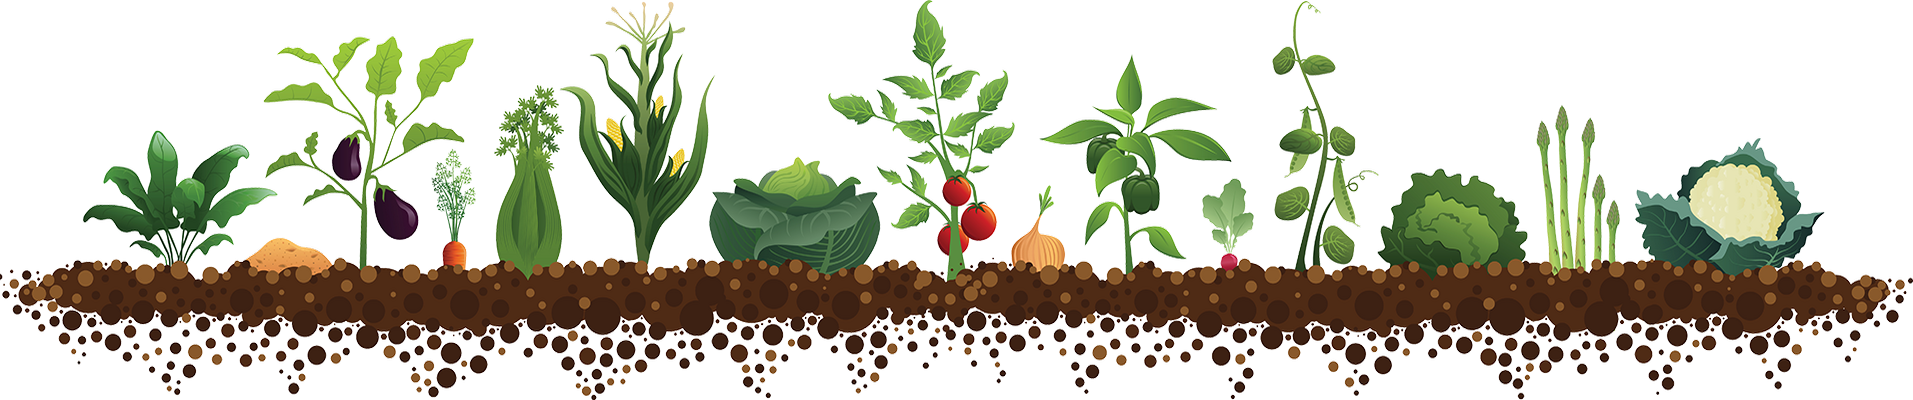 Посів насіння гарбуза в грунт травень 2020 коли сіяти насіння, висаджувати в сприятливі дні, терміни